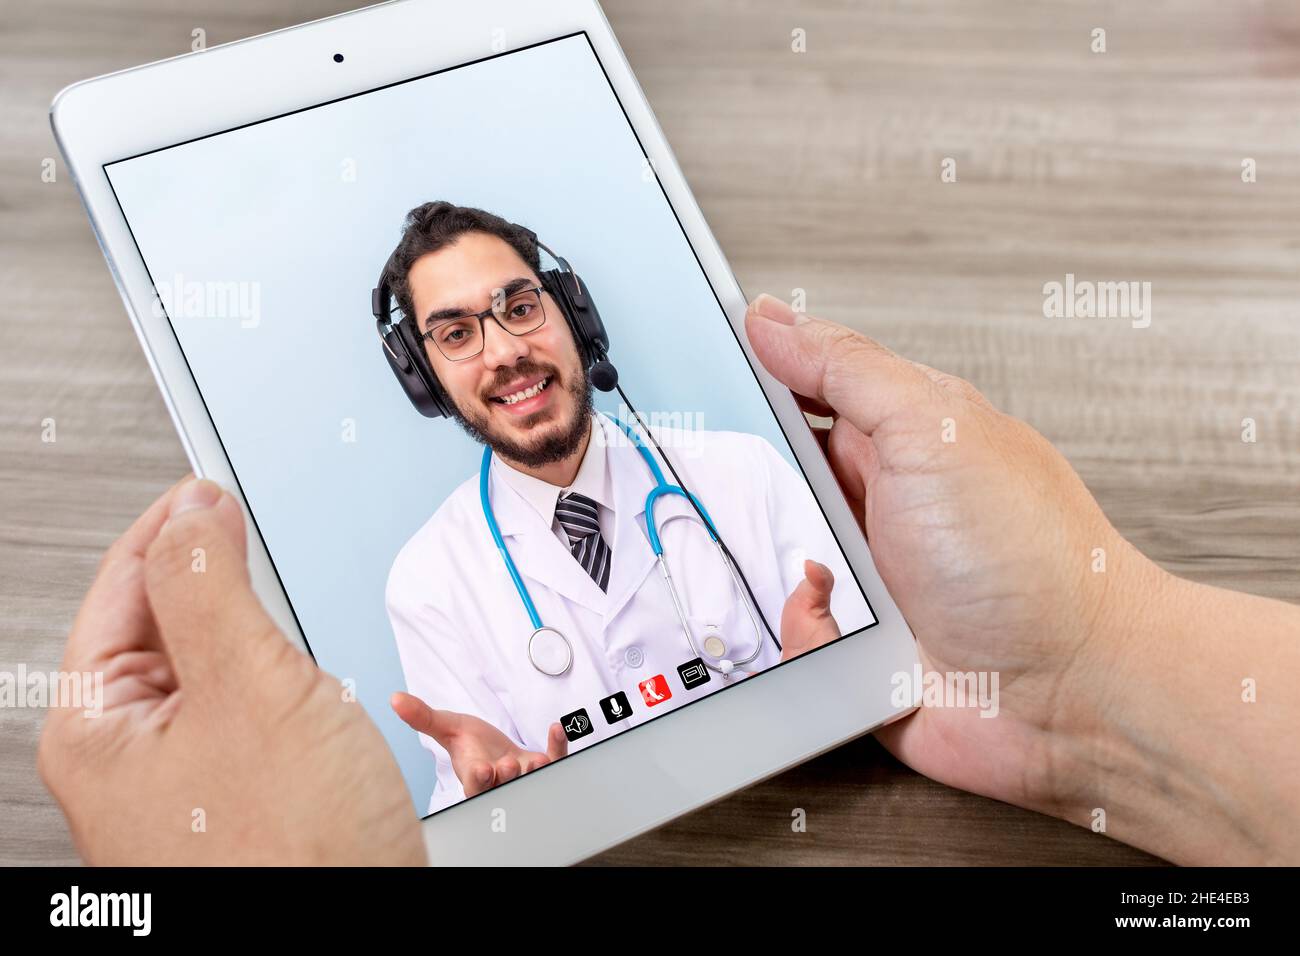 Die Erwachsene Frau hans hält die Tablette während einer Online-Konsultation mit ihrem Arzt. Tele-Medizin-Konzept. Stockfoto